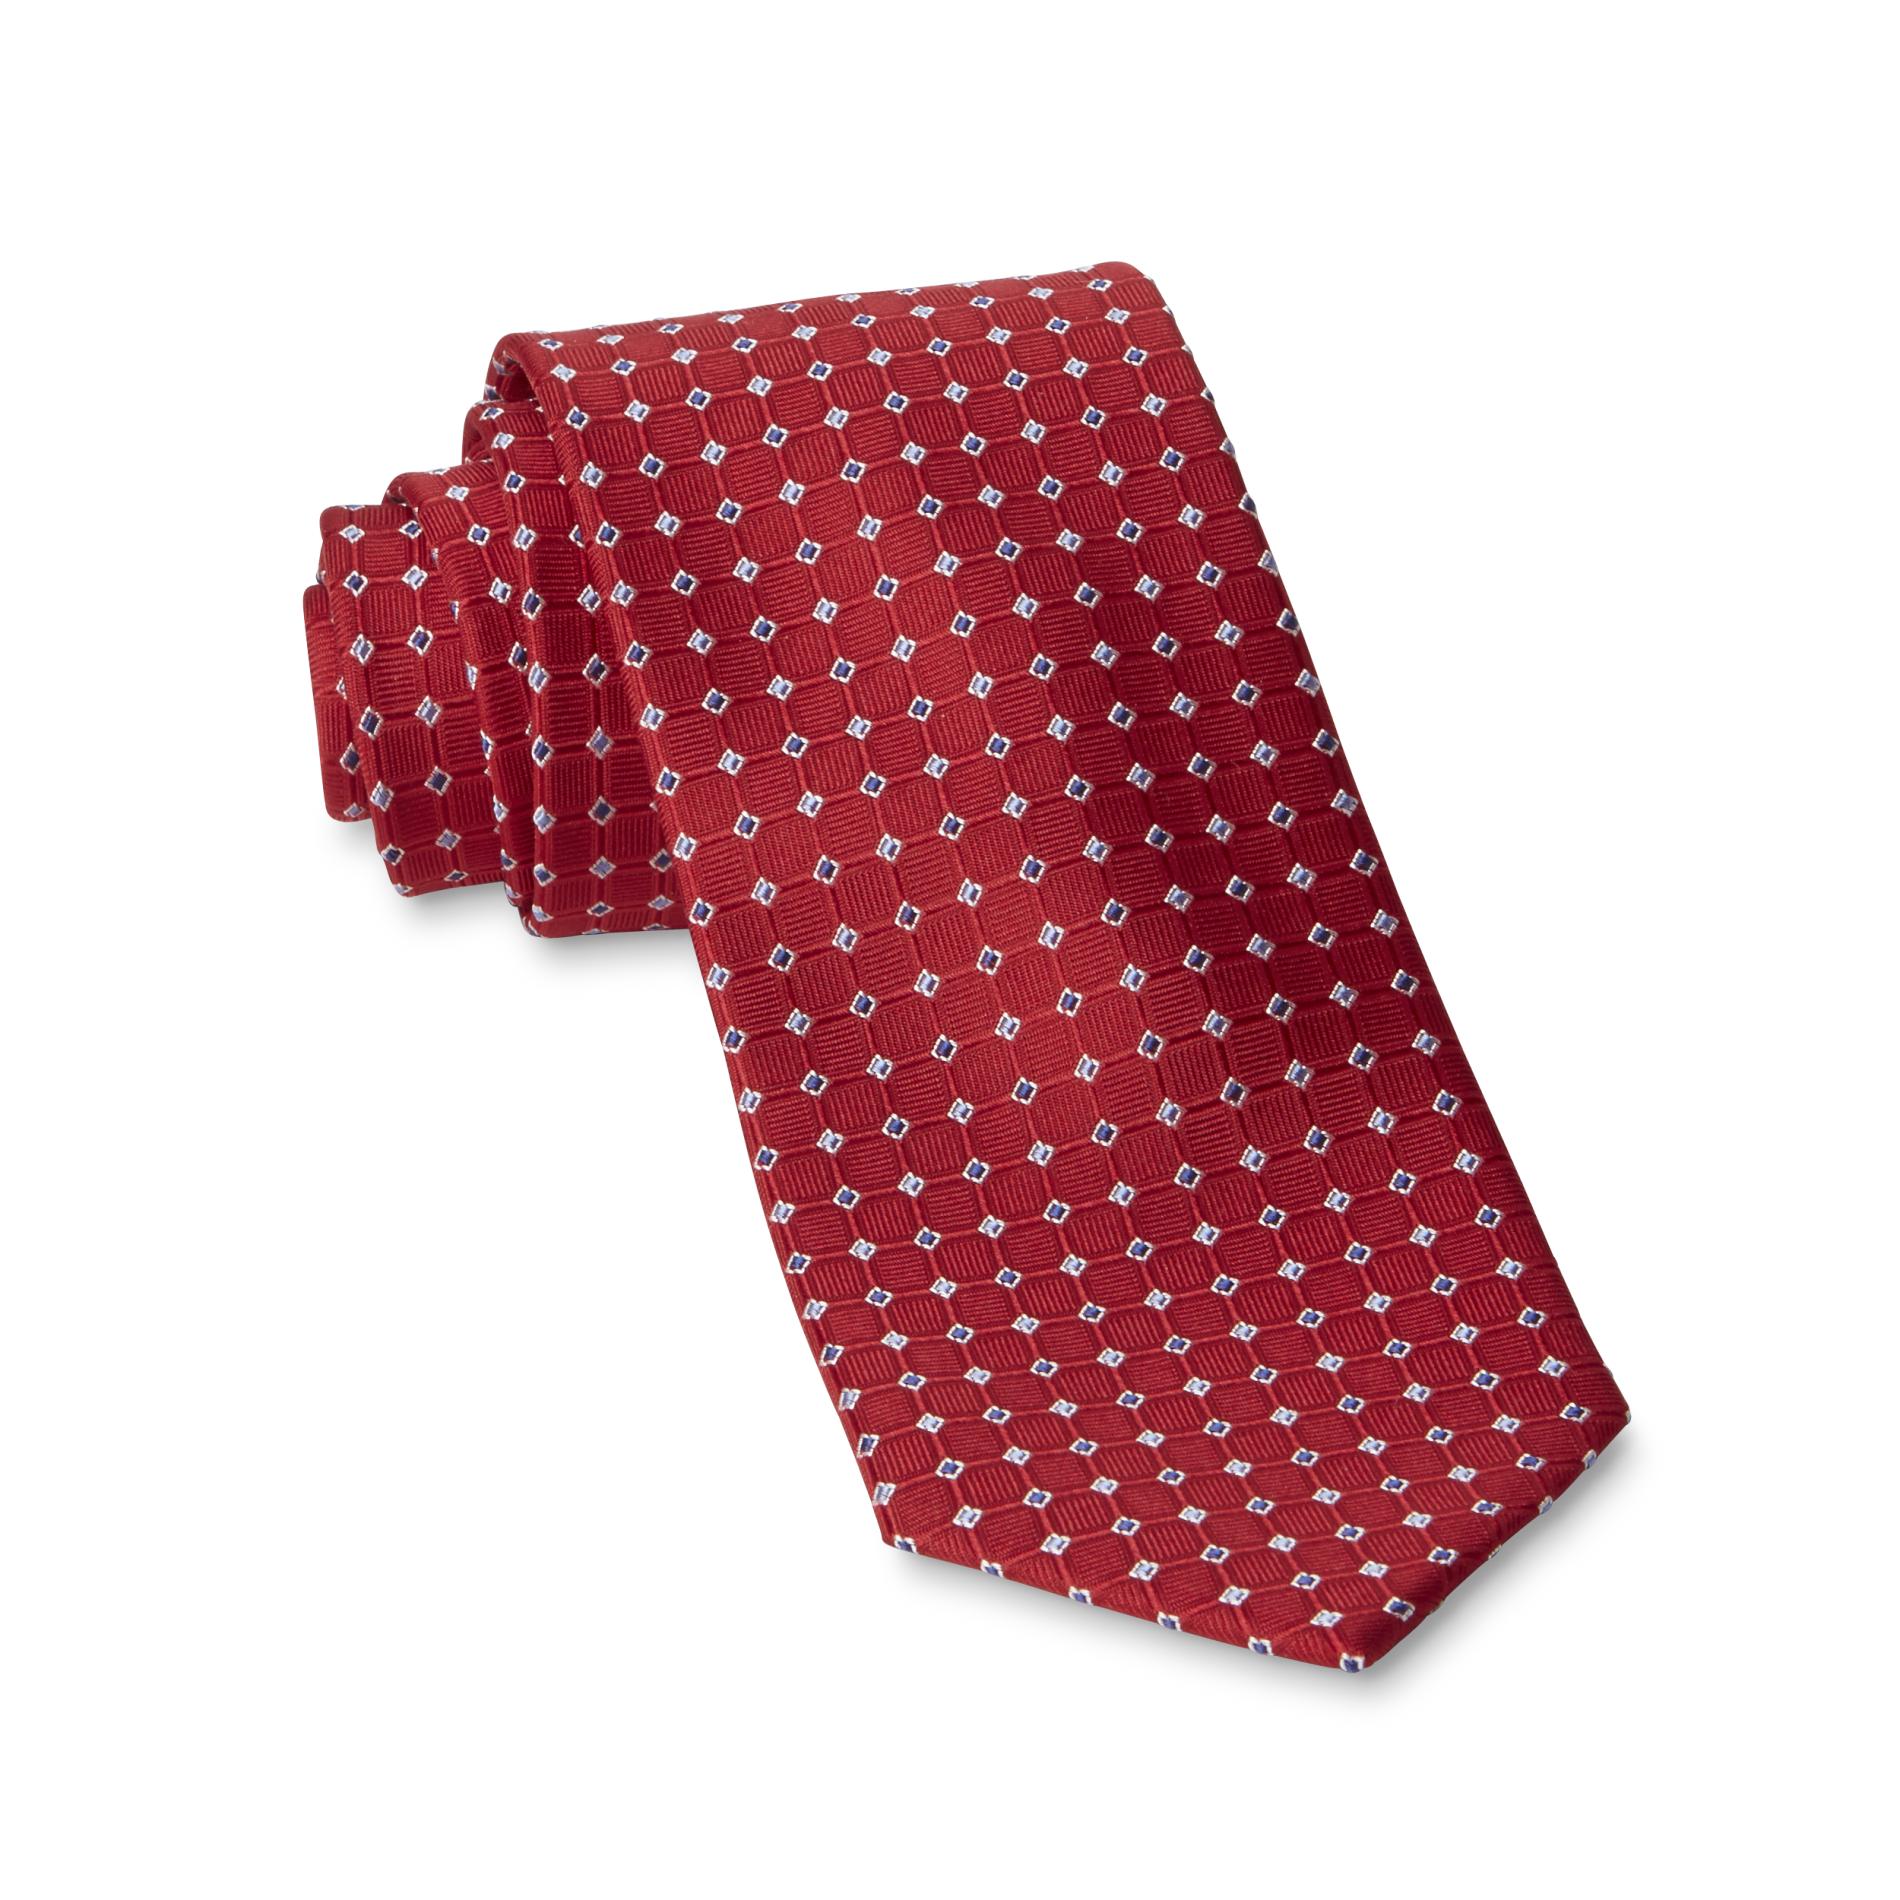 Covington Men's Necktie - Square